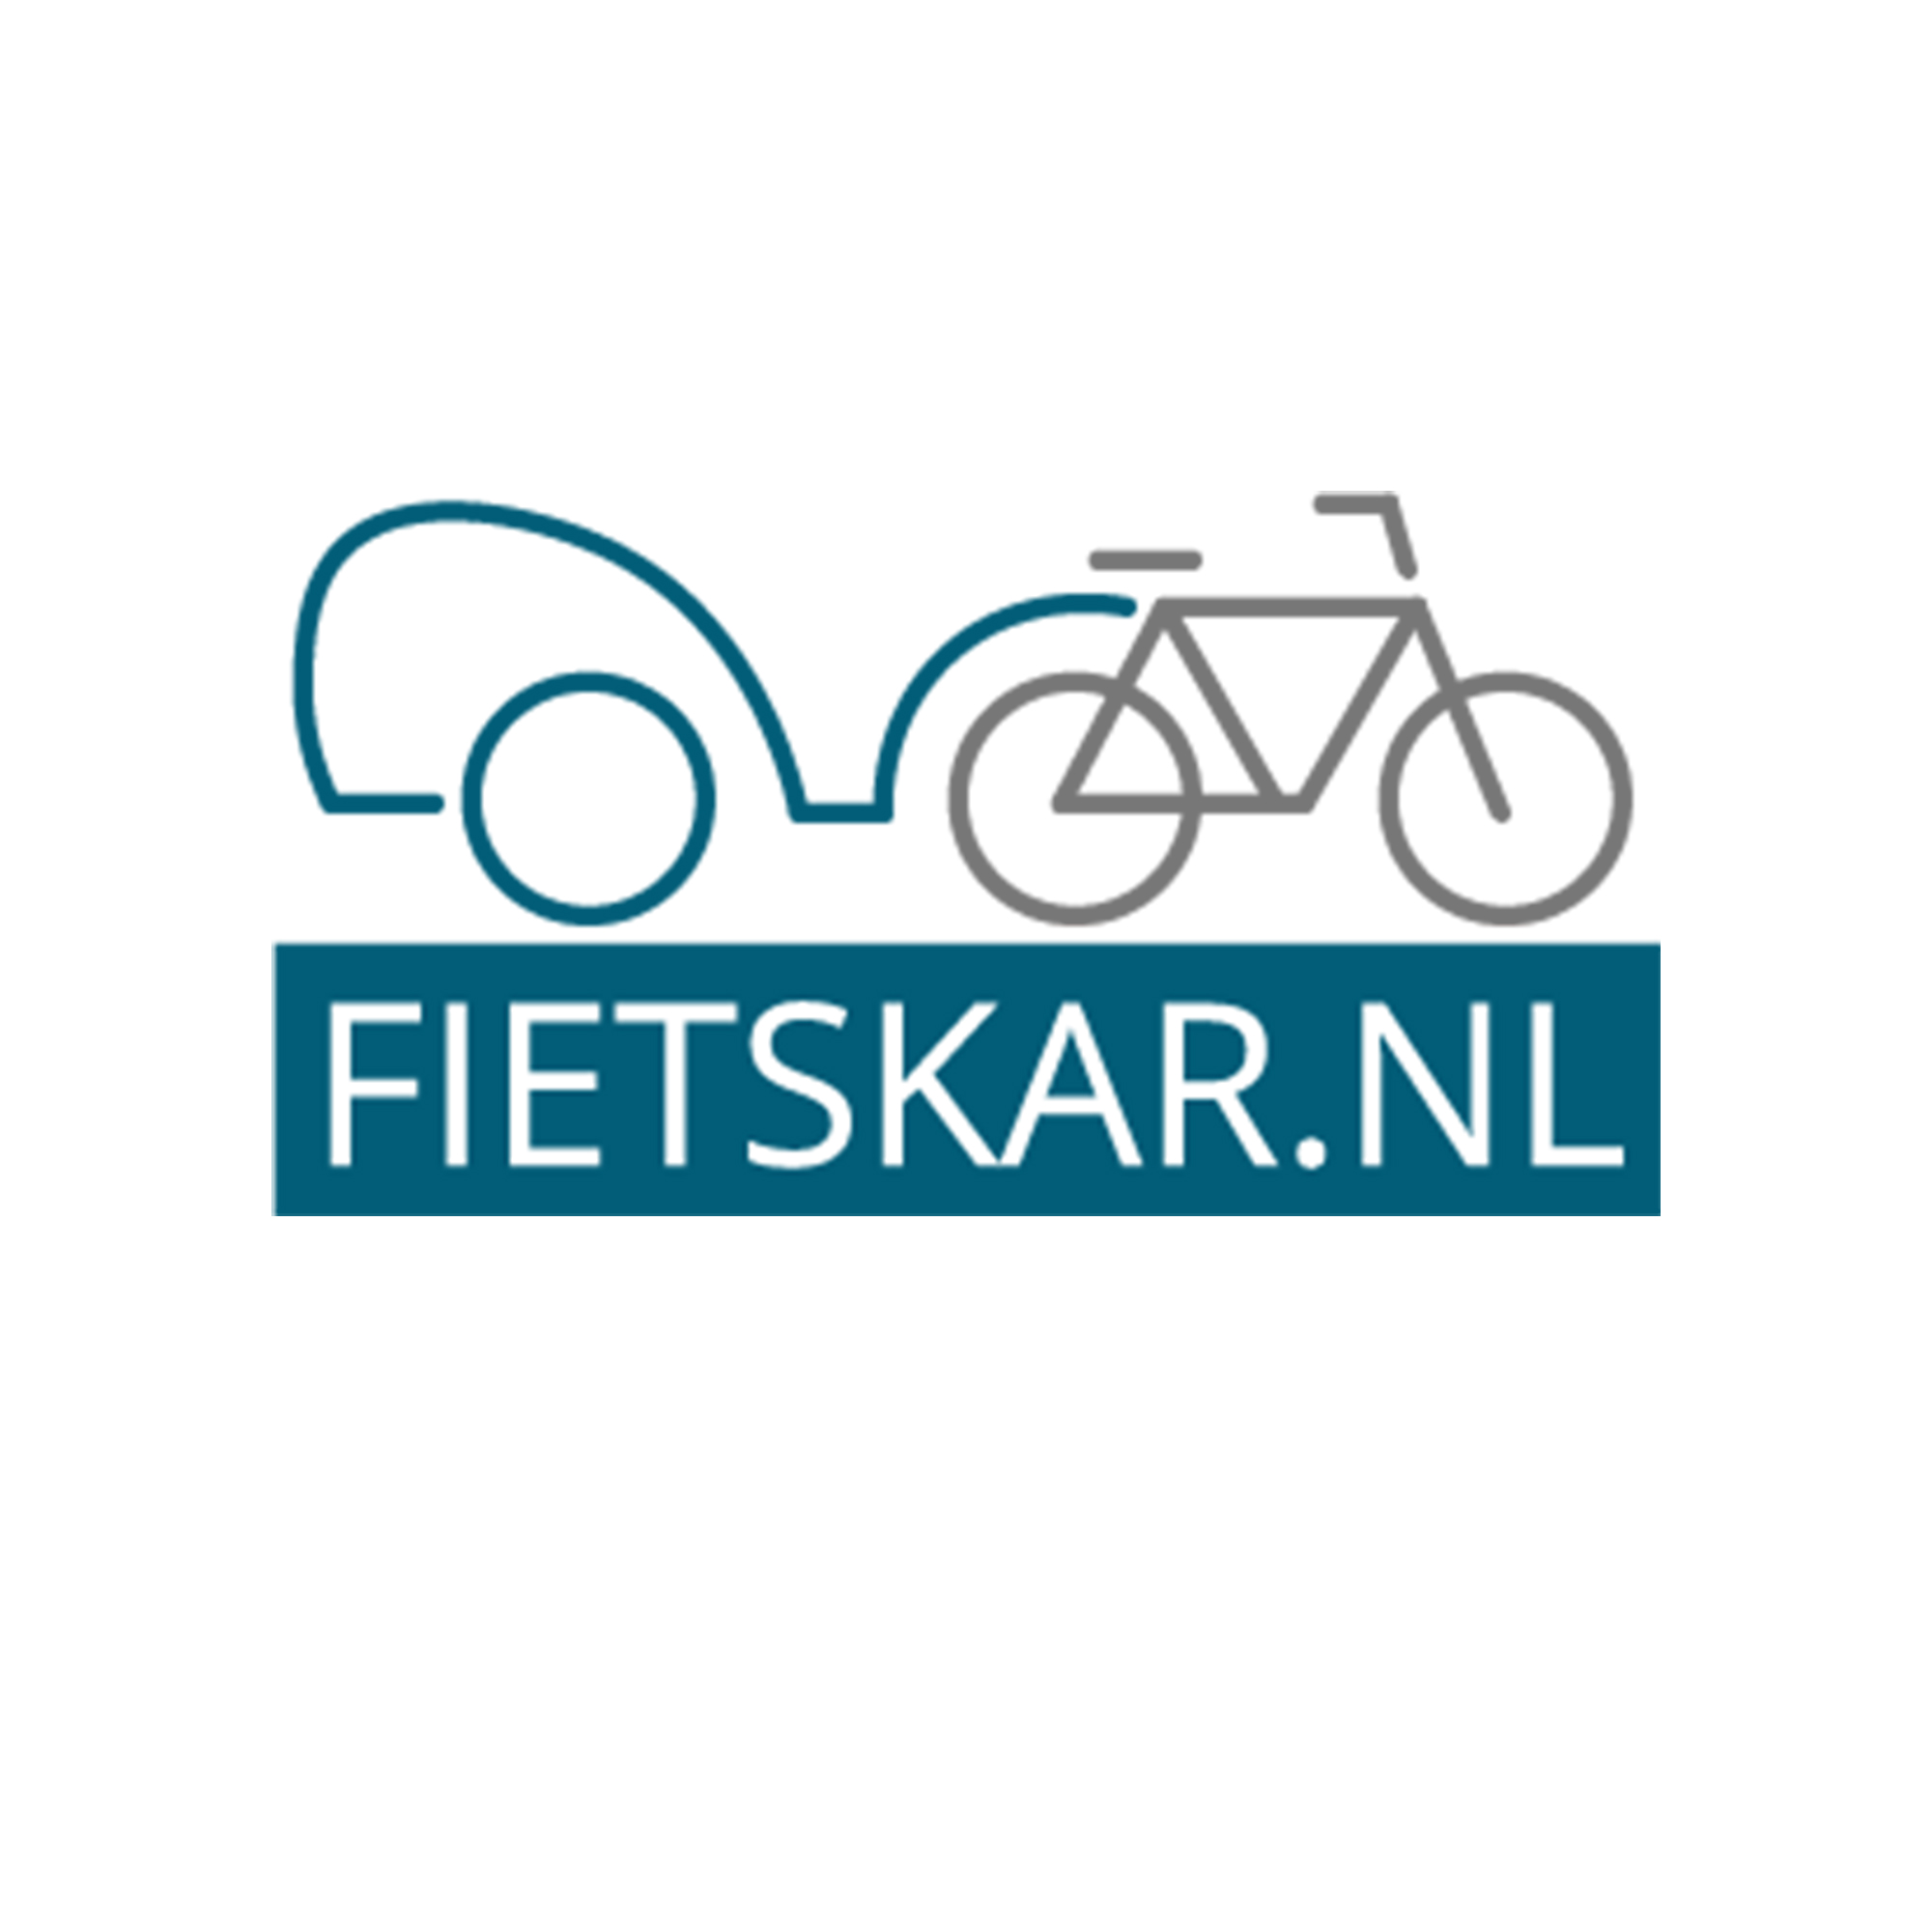 logo-Mockup-made-marketing-portfolio-fietskar.nl